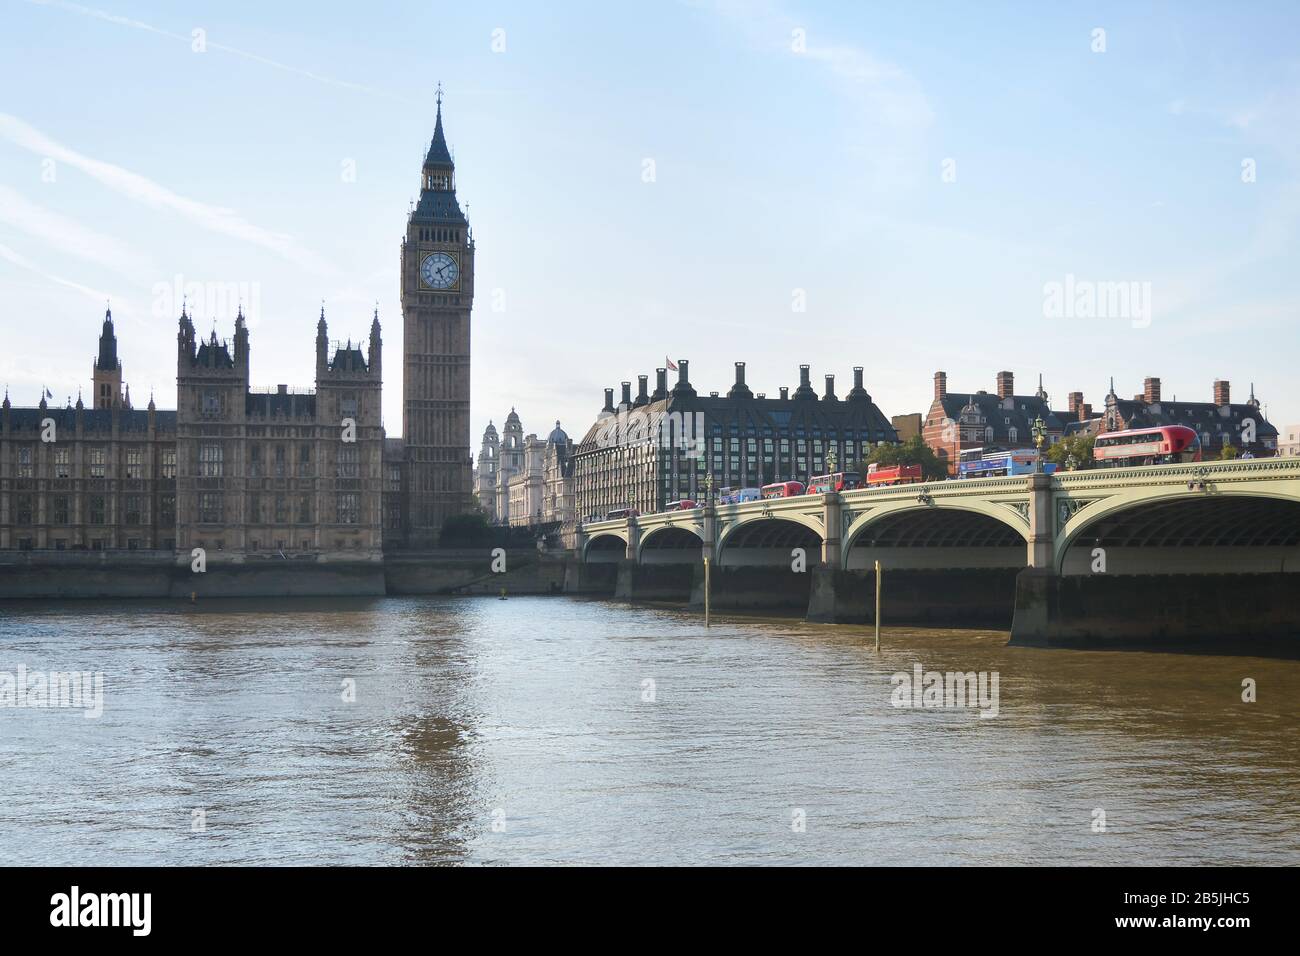 London in England, 14. März 2020: Westminster Parliament, Big Ben und der Themse River Stockfoto